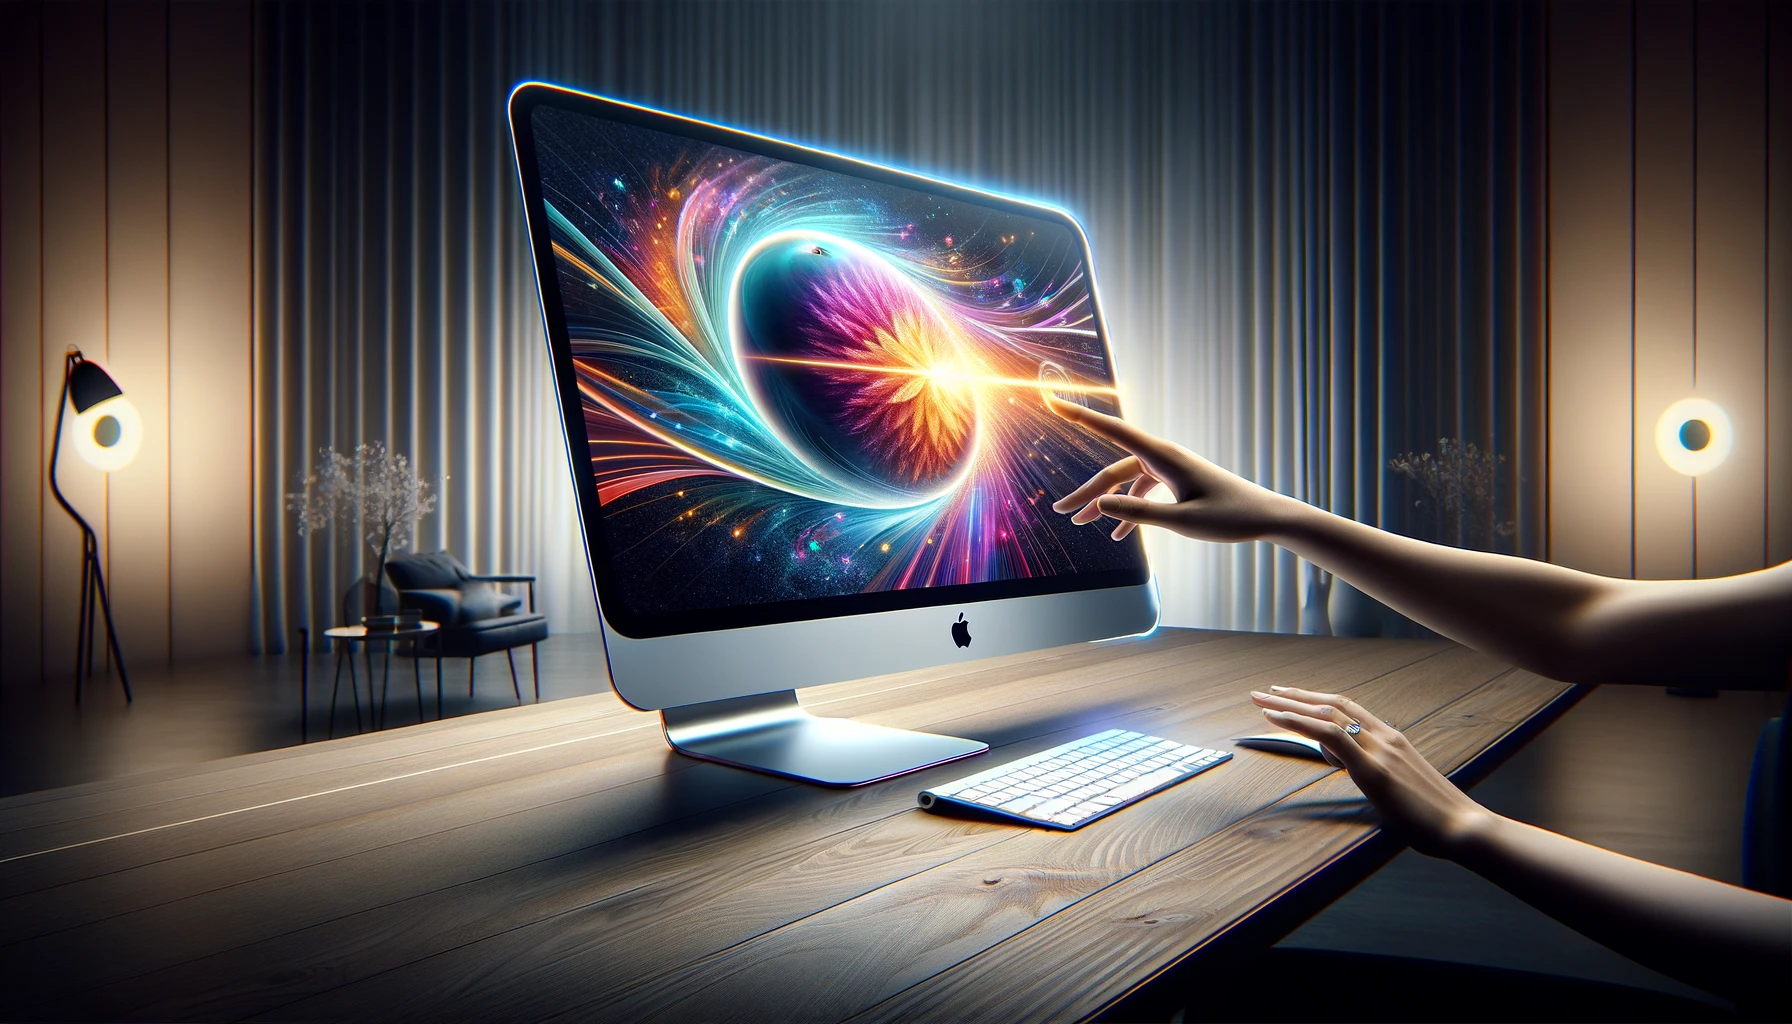 El iMac con pantalla táctil a la vista, ¿un futuro pivotante?